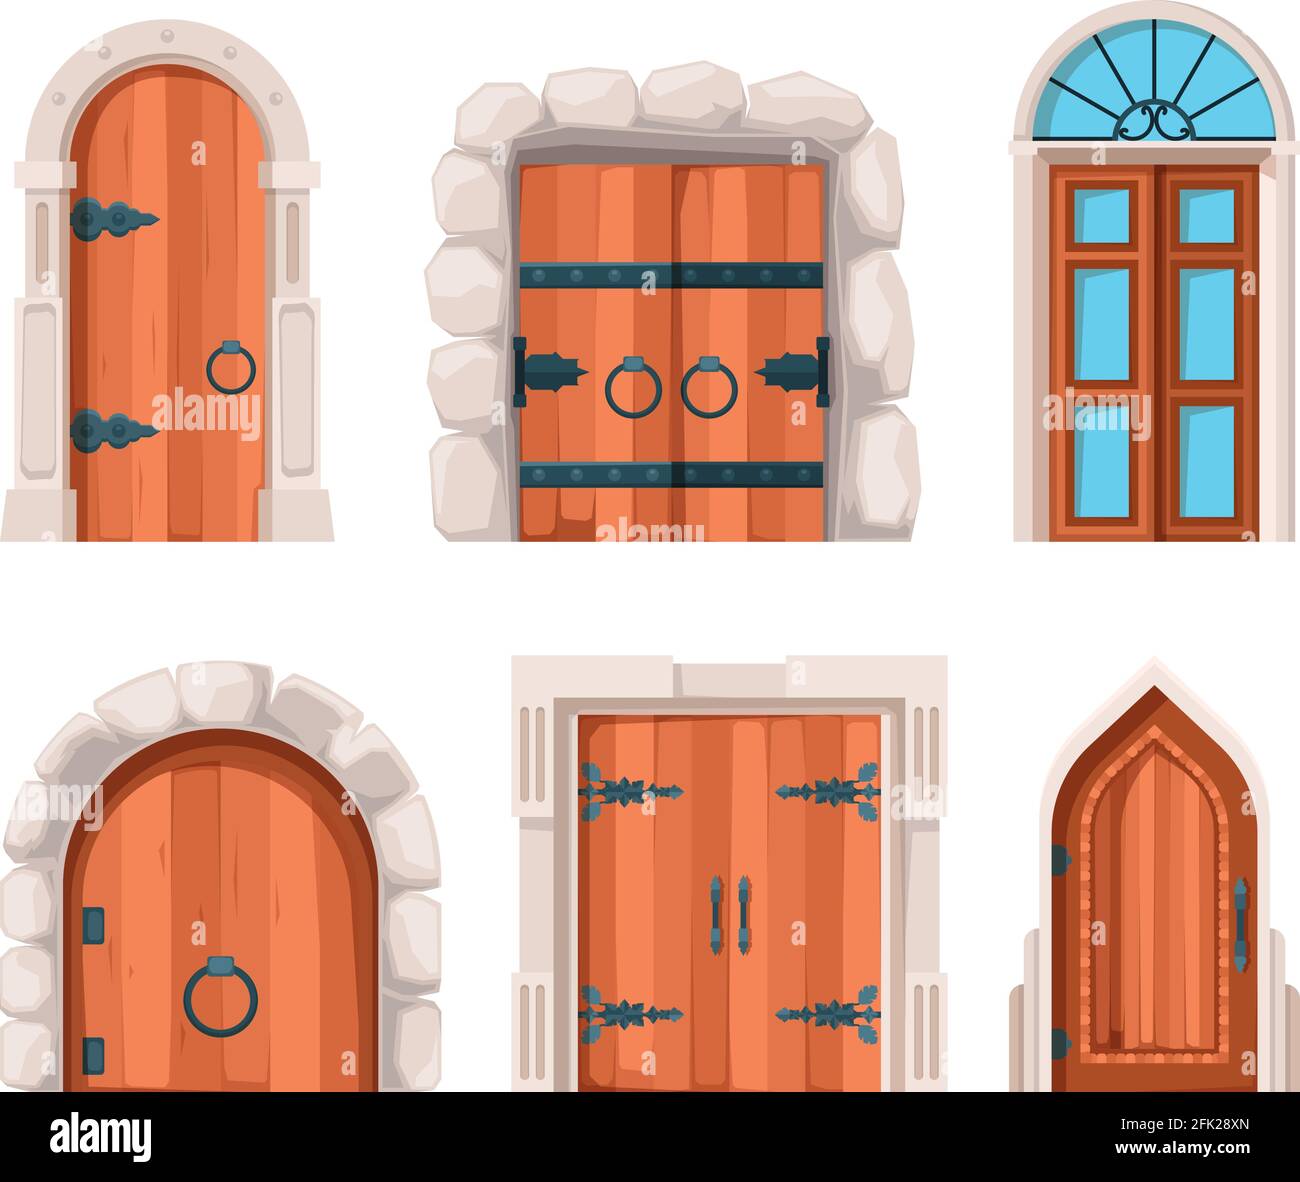 Anciennes portes. Portes et portes en pierre en bois datant du Moyen-âge et de l'ancien bâtiment de châteaux de dessins vectoriels Illustration de Vecteur